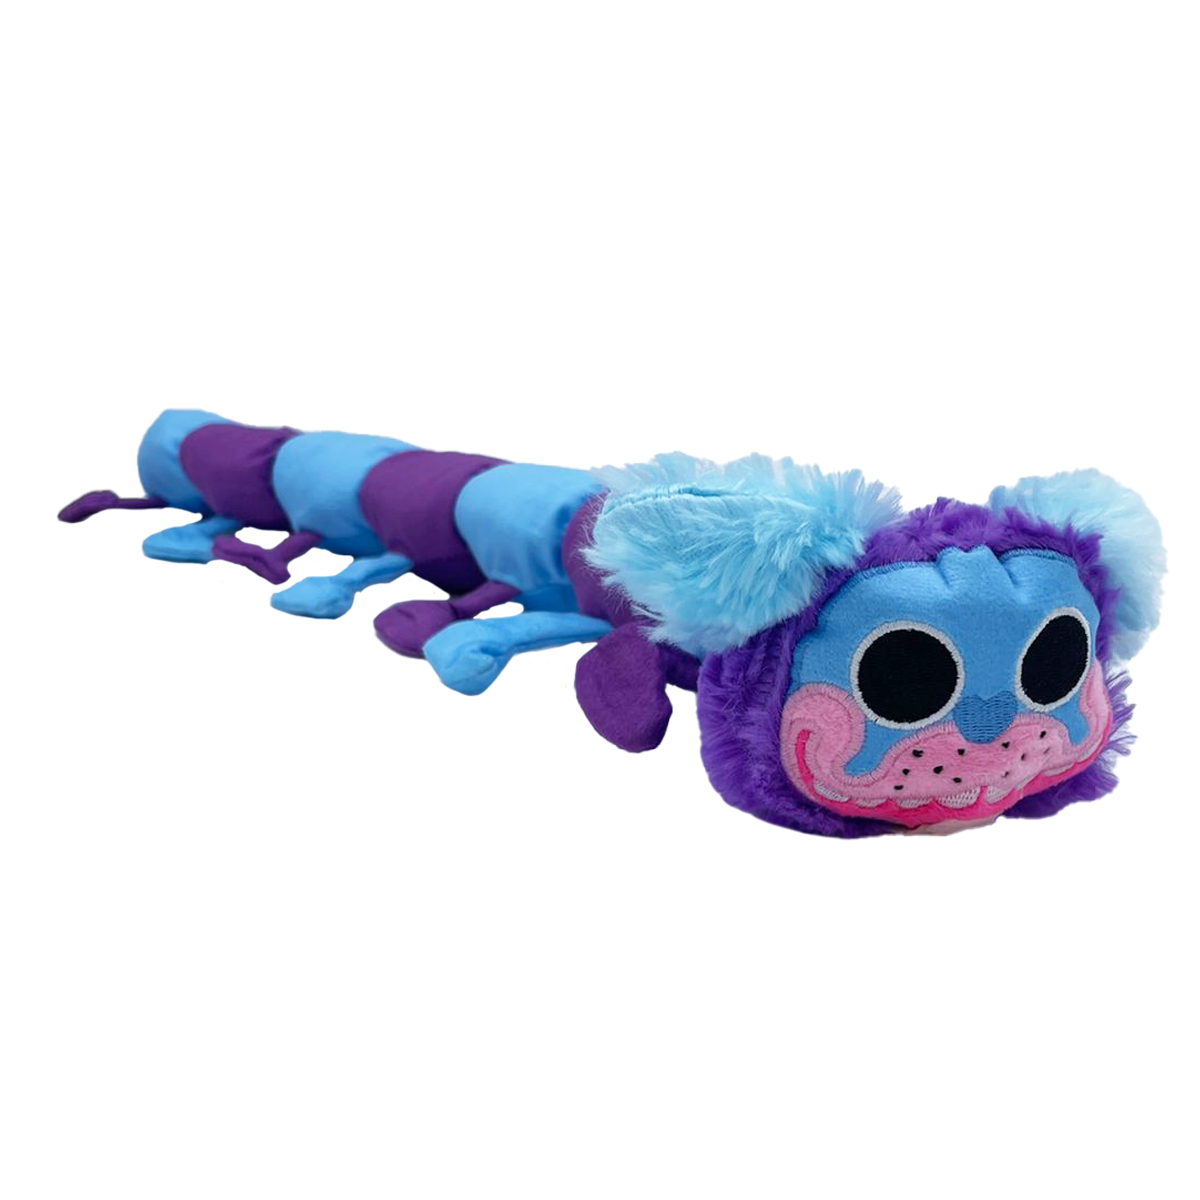 Гусеница-О-Мопс собака Пи Джей Хаги Ваги из Поппи Плейтайм, 60 см игрушка музыкальная синий хагги вагги